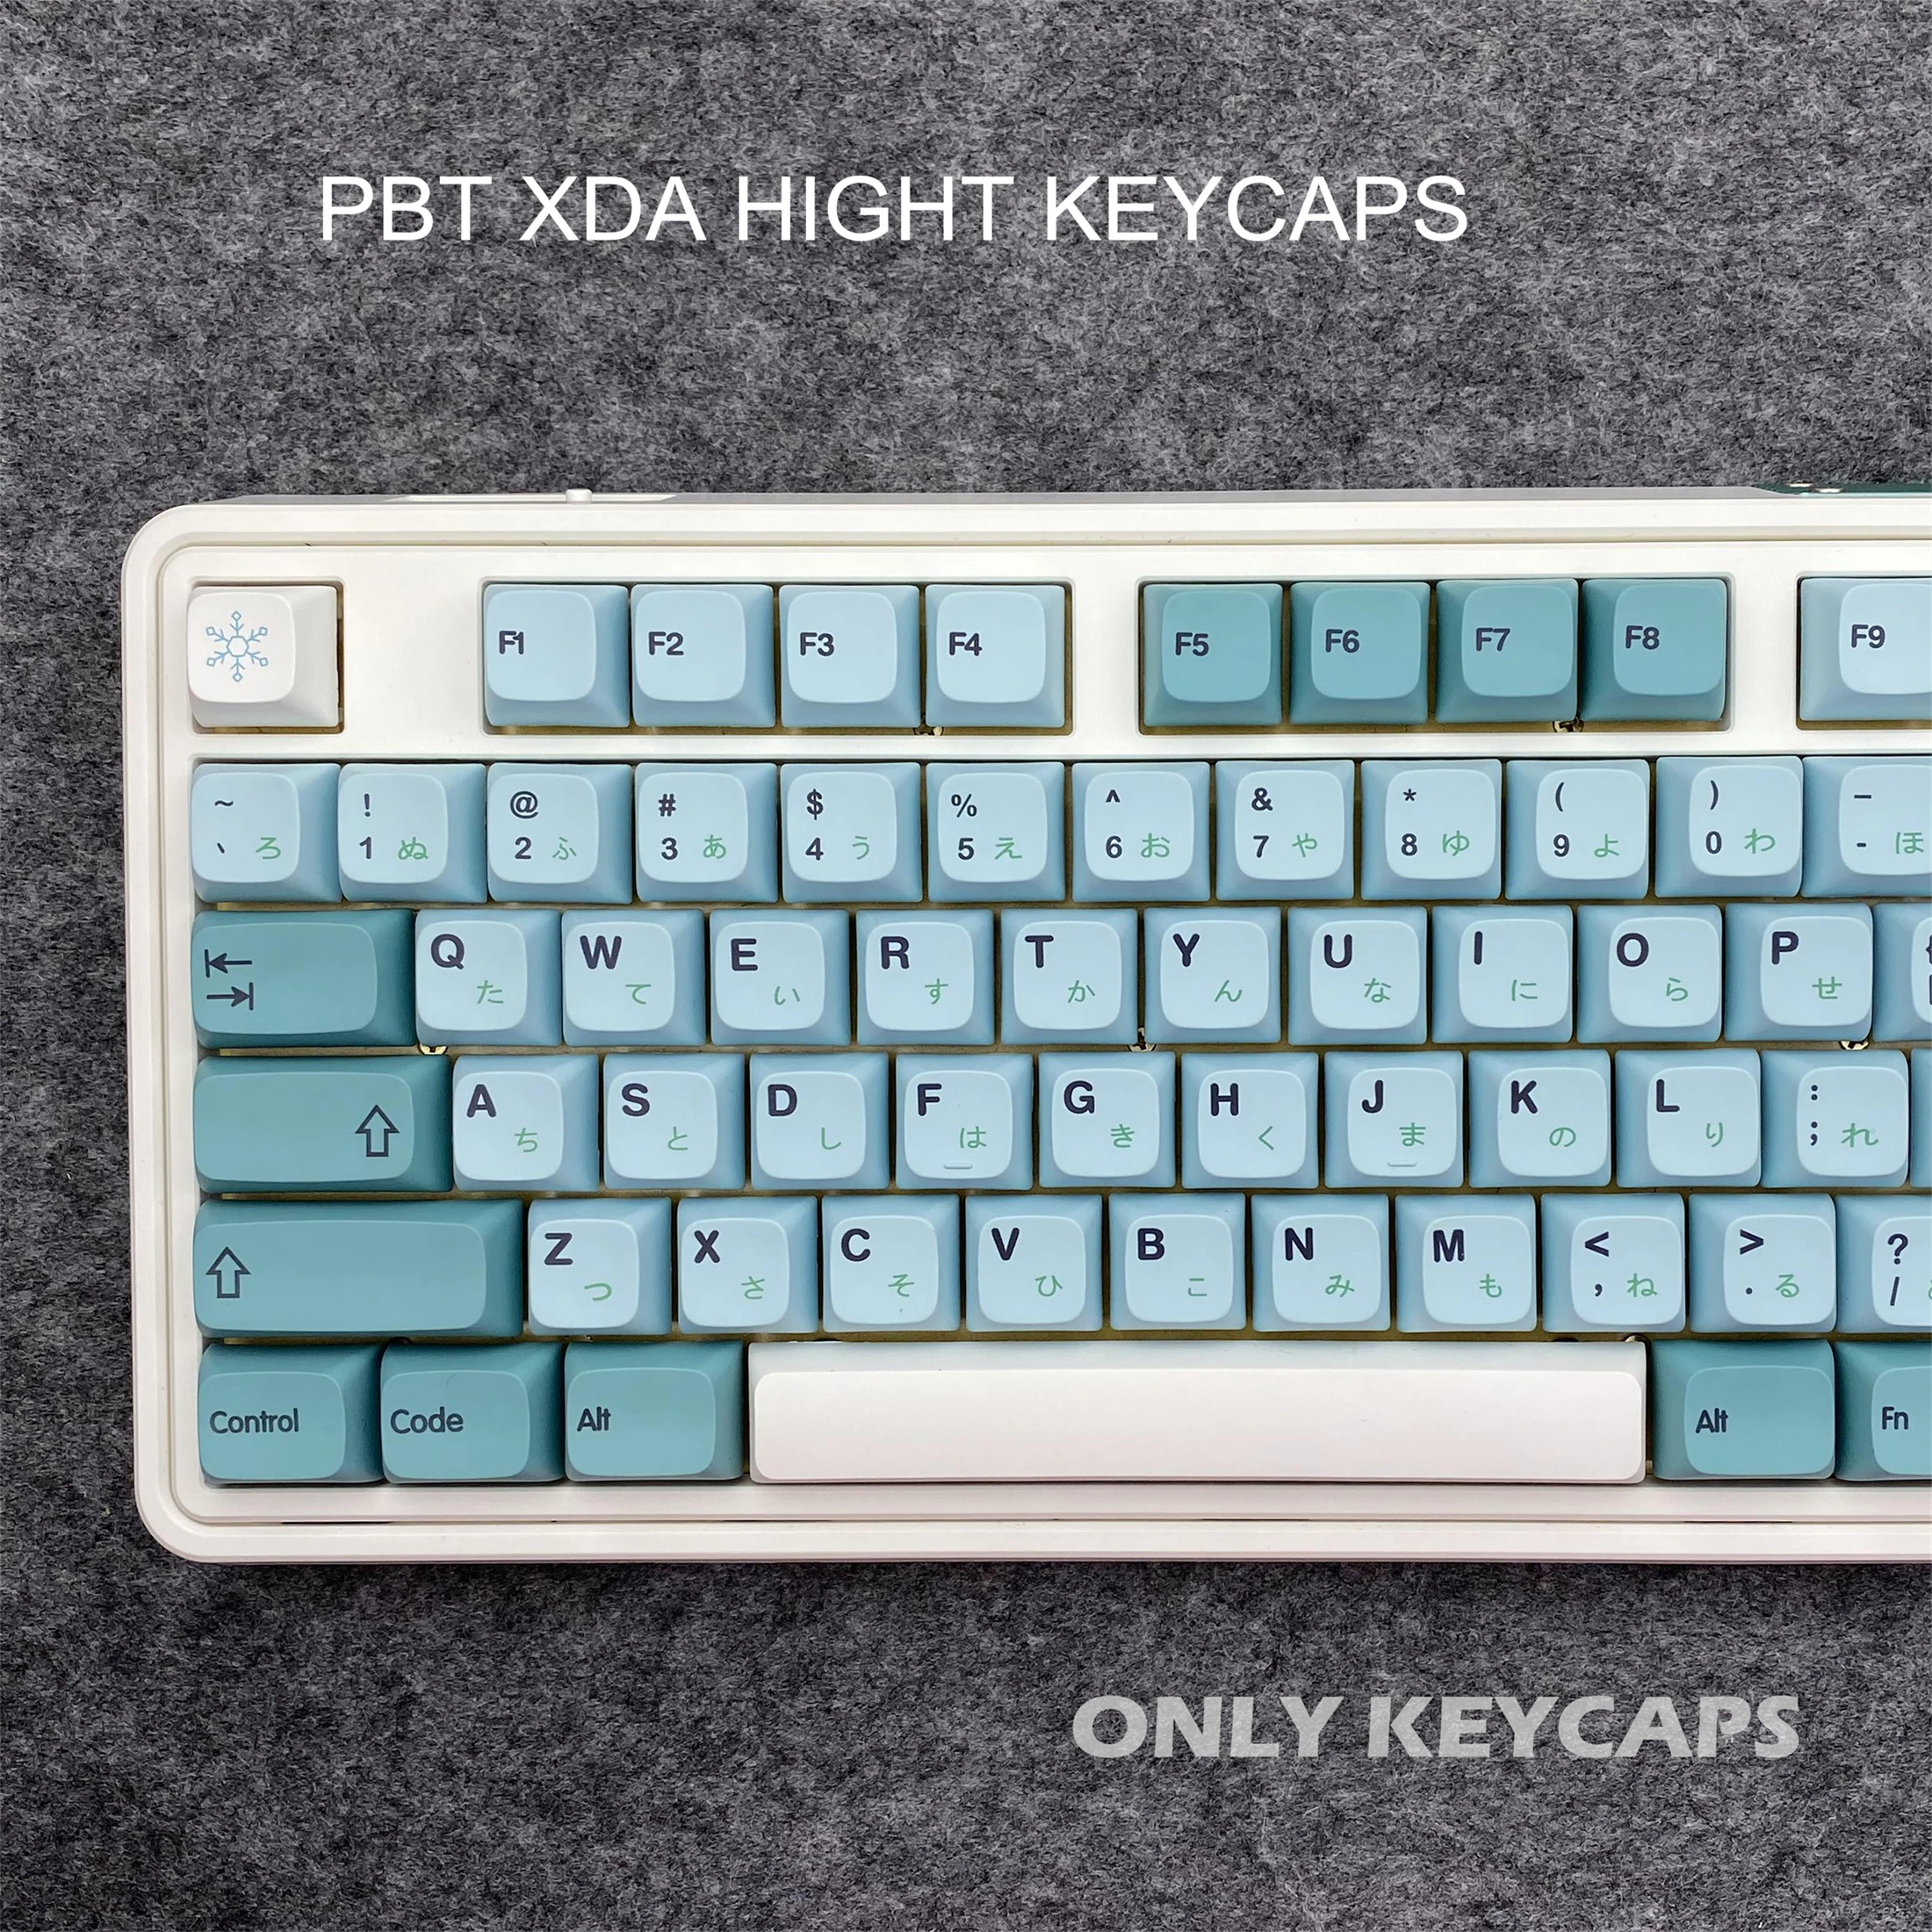 

Колпачки для клавиш PBT XDA, профиль для Cherry MX, механическая клавиатура, японские персонализированные минималистичные колпачки для клавиш